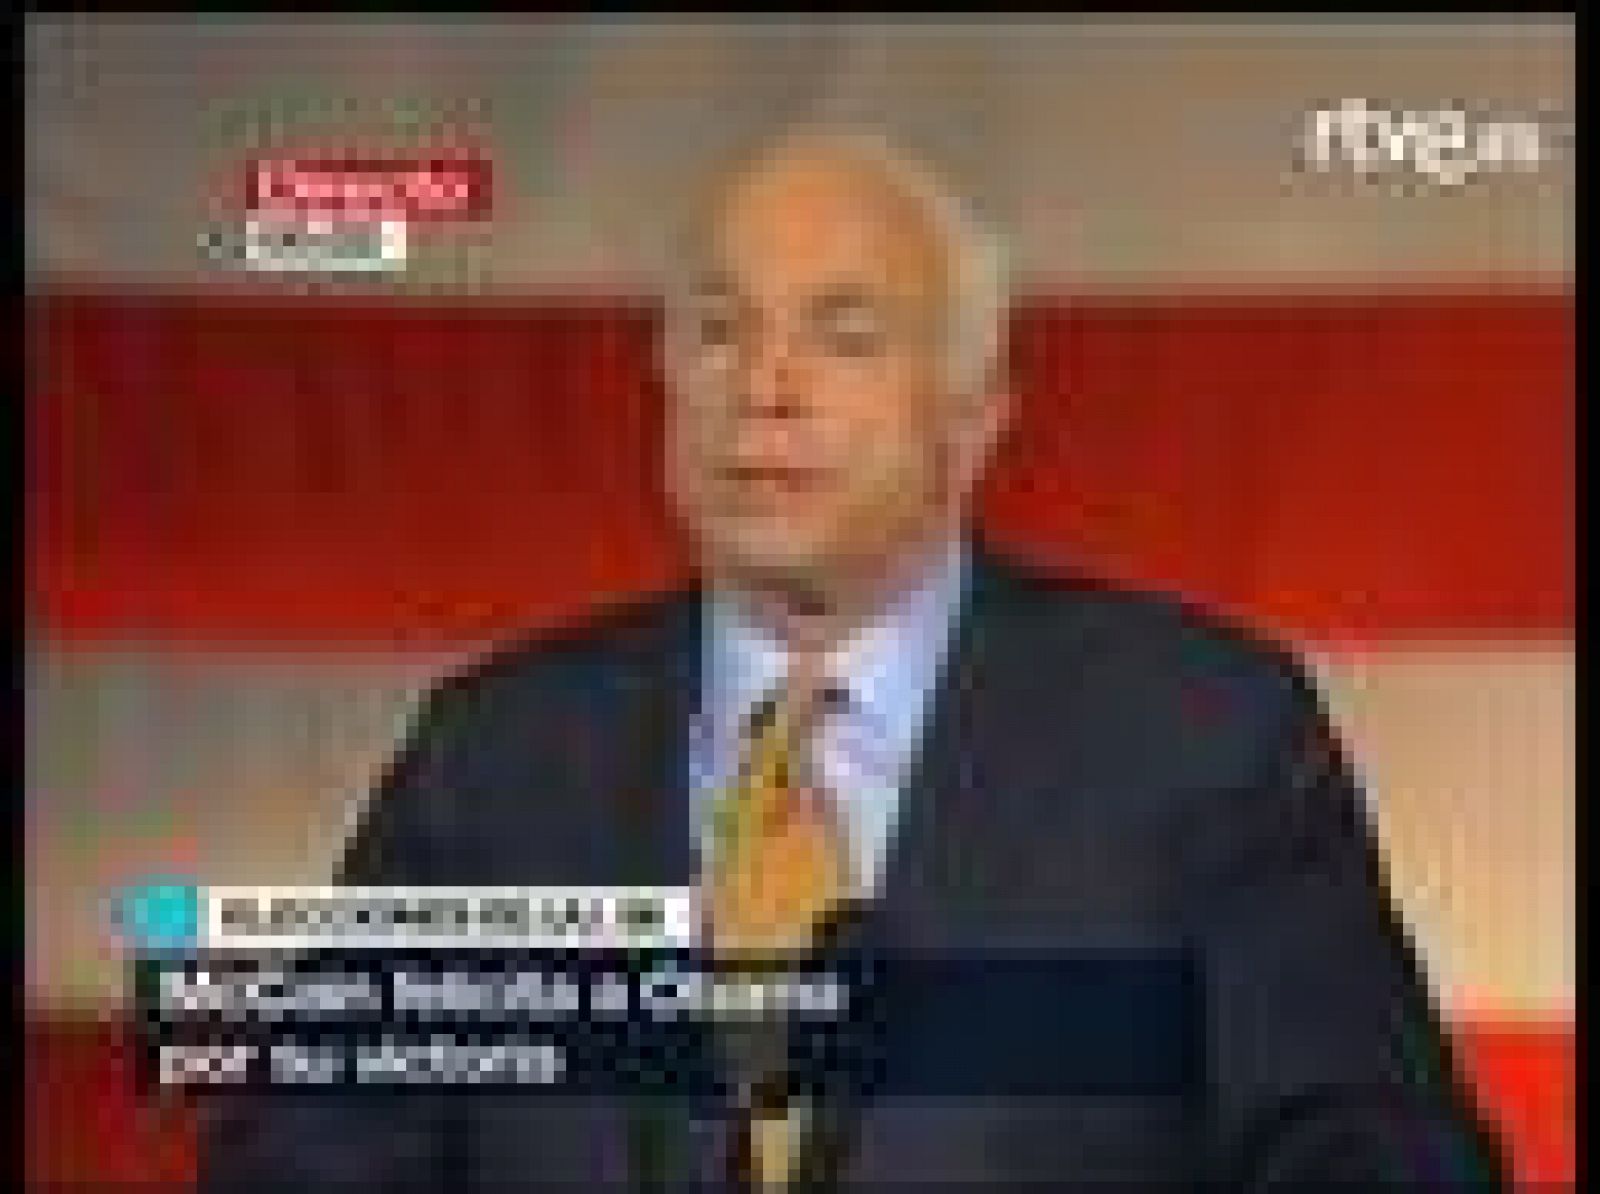  Discurso íntegro de McCain